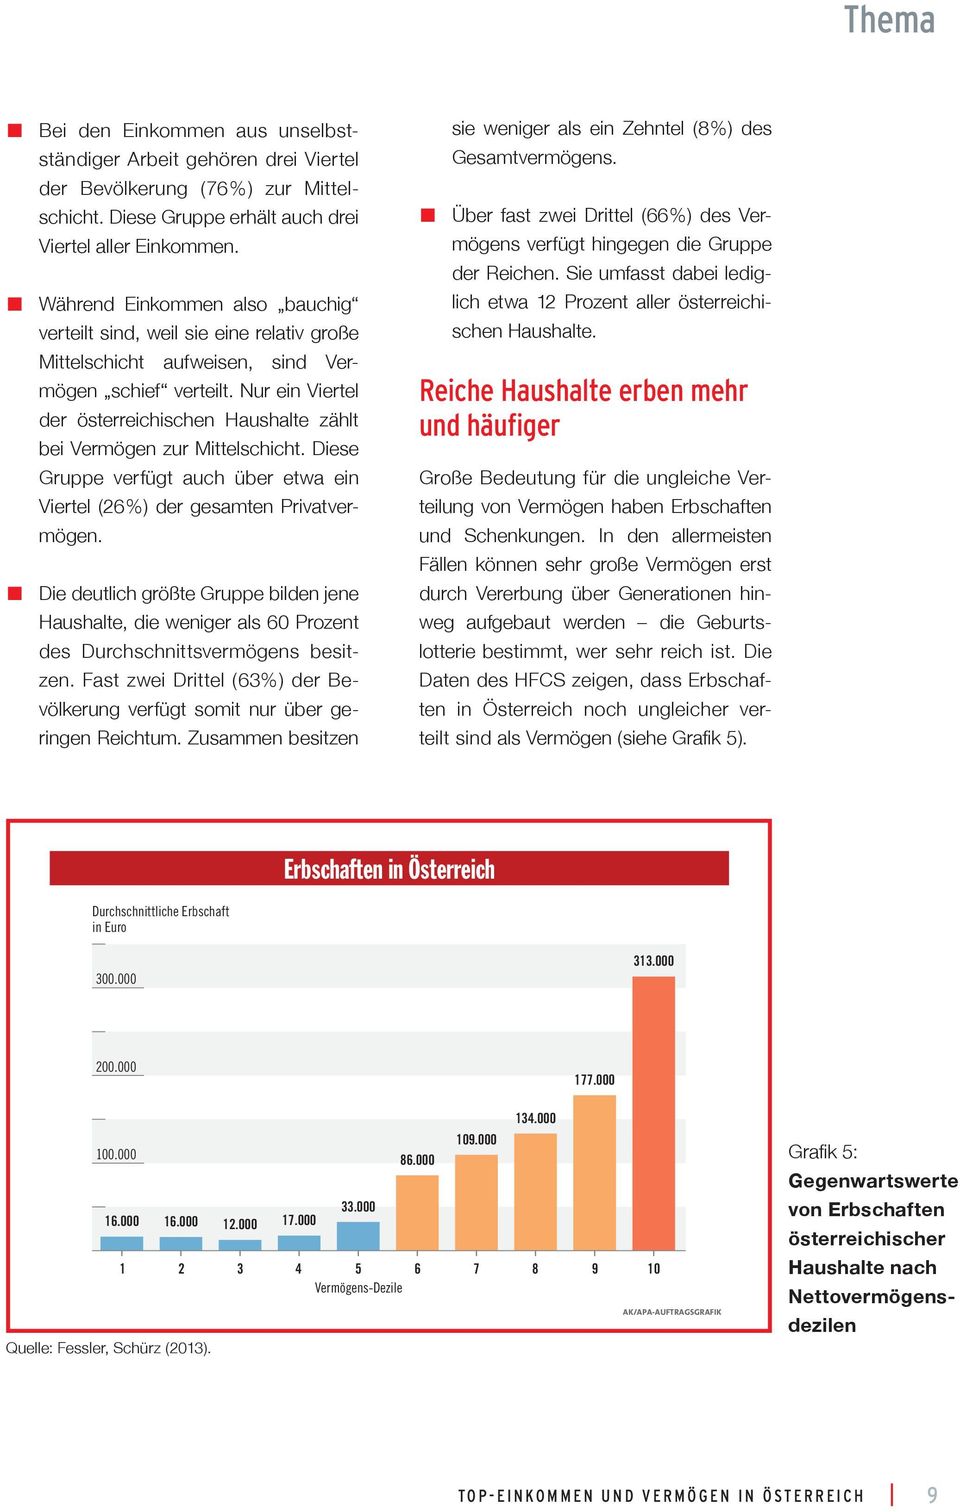 Nur ein Viertel der österreichischen Haushalte zählt bei Vermögen zur Mittelschicht. Diese Gruppe verfügt auch über etwa ein Viertel ( 26 %) der gesamten Privatvermögen.